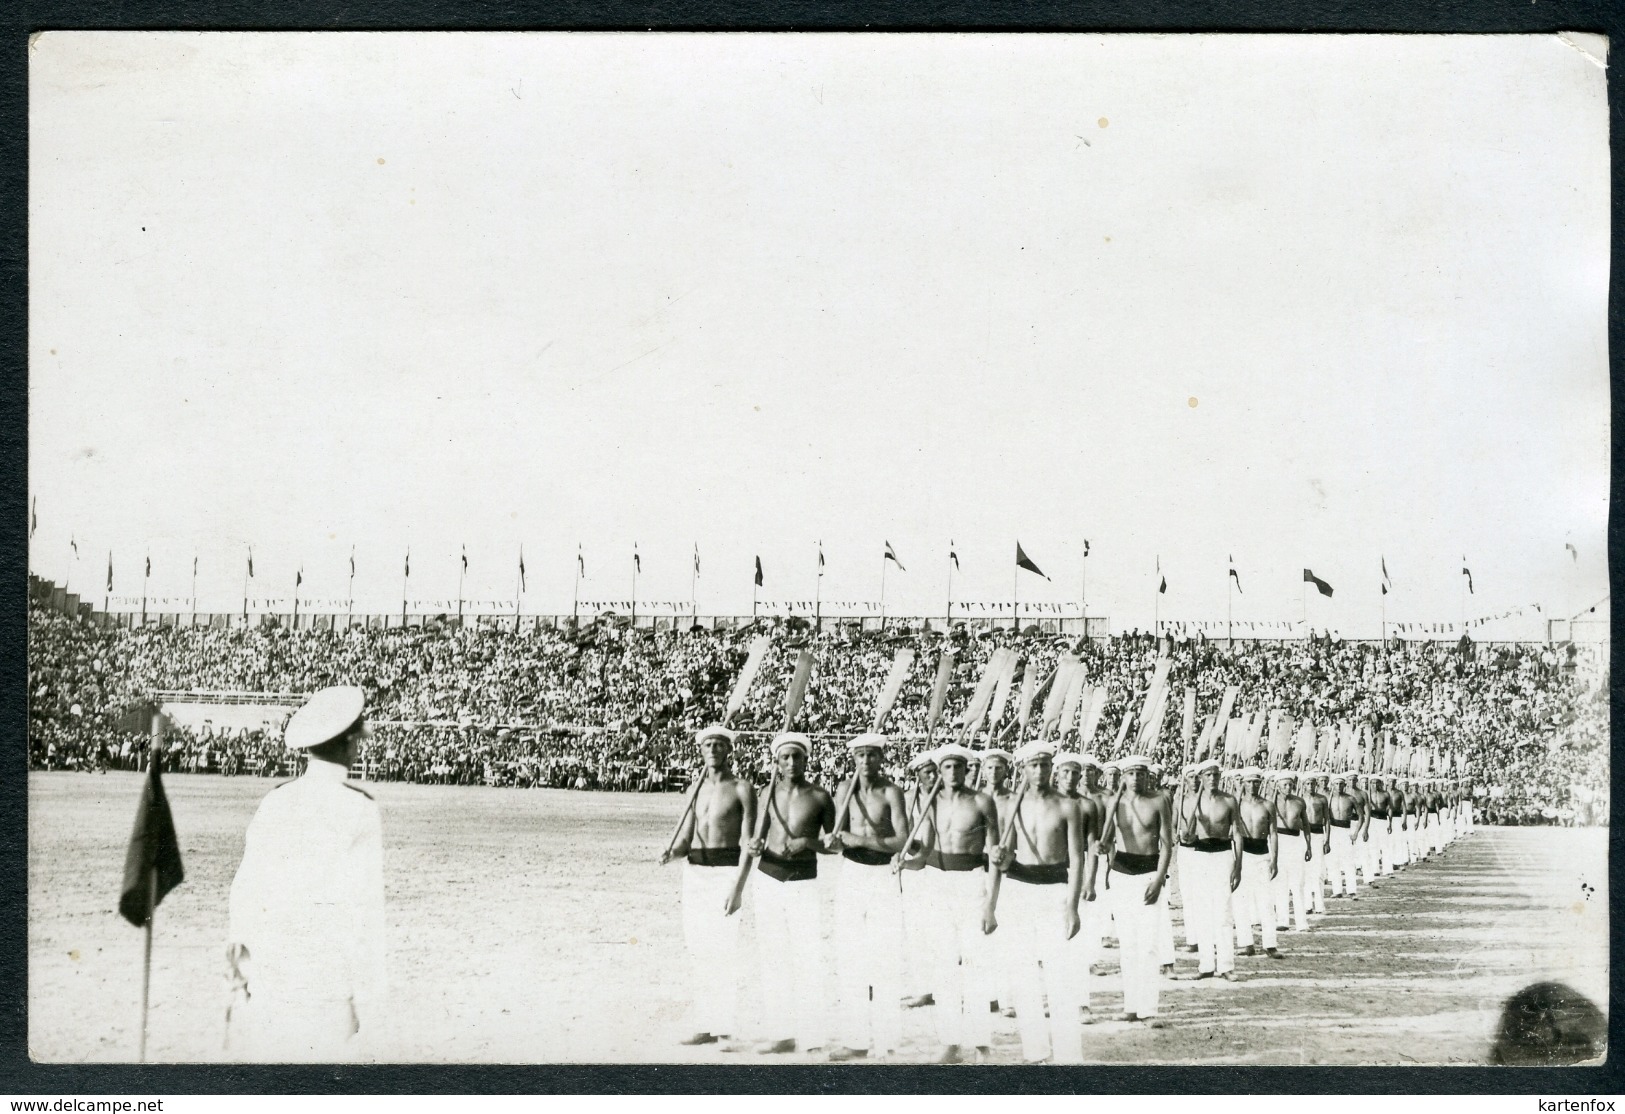 Foto, Beograd, Stadion, Ruderer, Militär, 1930, Foto ZSAK - Serbien